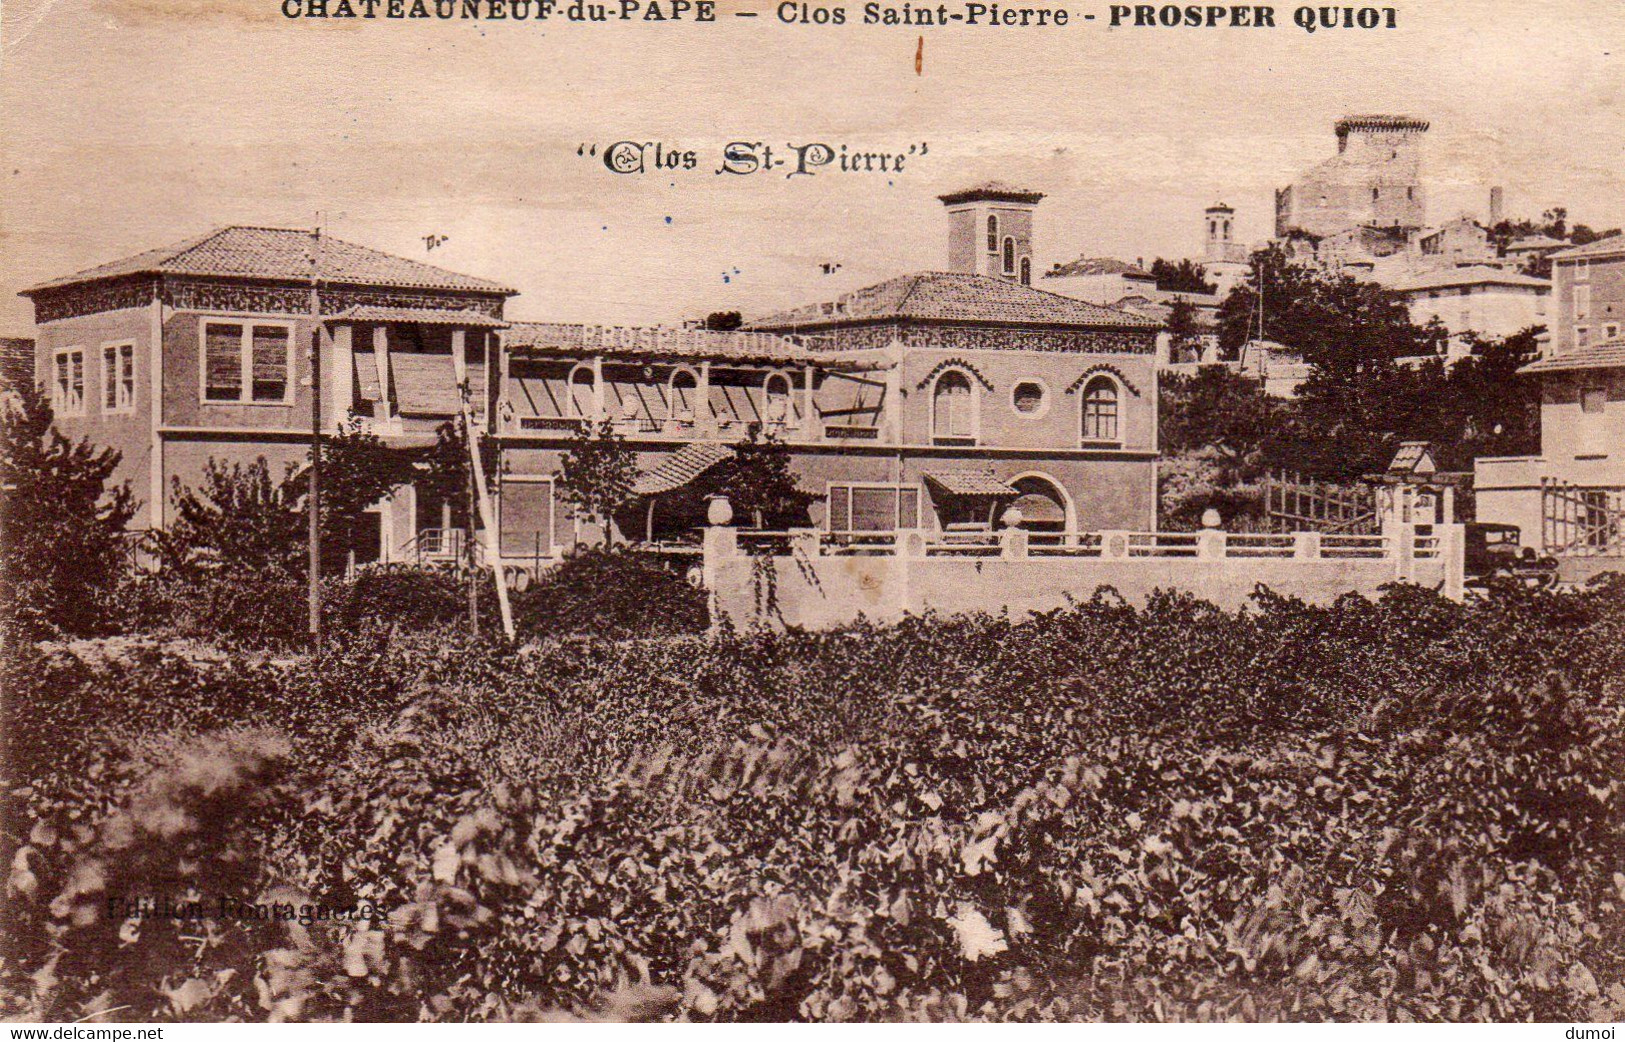 CHATEAUNEUF Du PAPE  -  Clos Saint Pierre  -  PROSPER QUIOT - Chateauneuf Du Pape